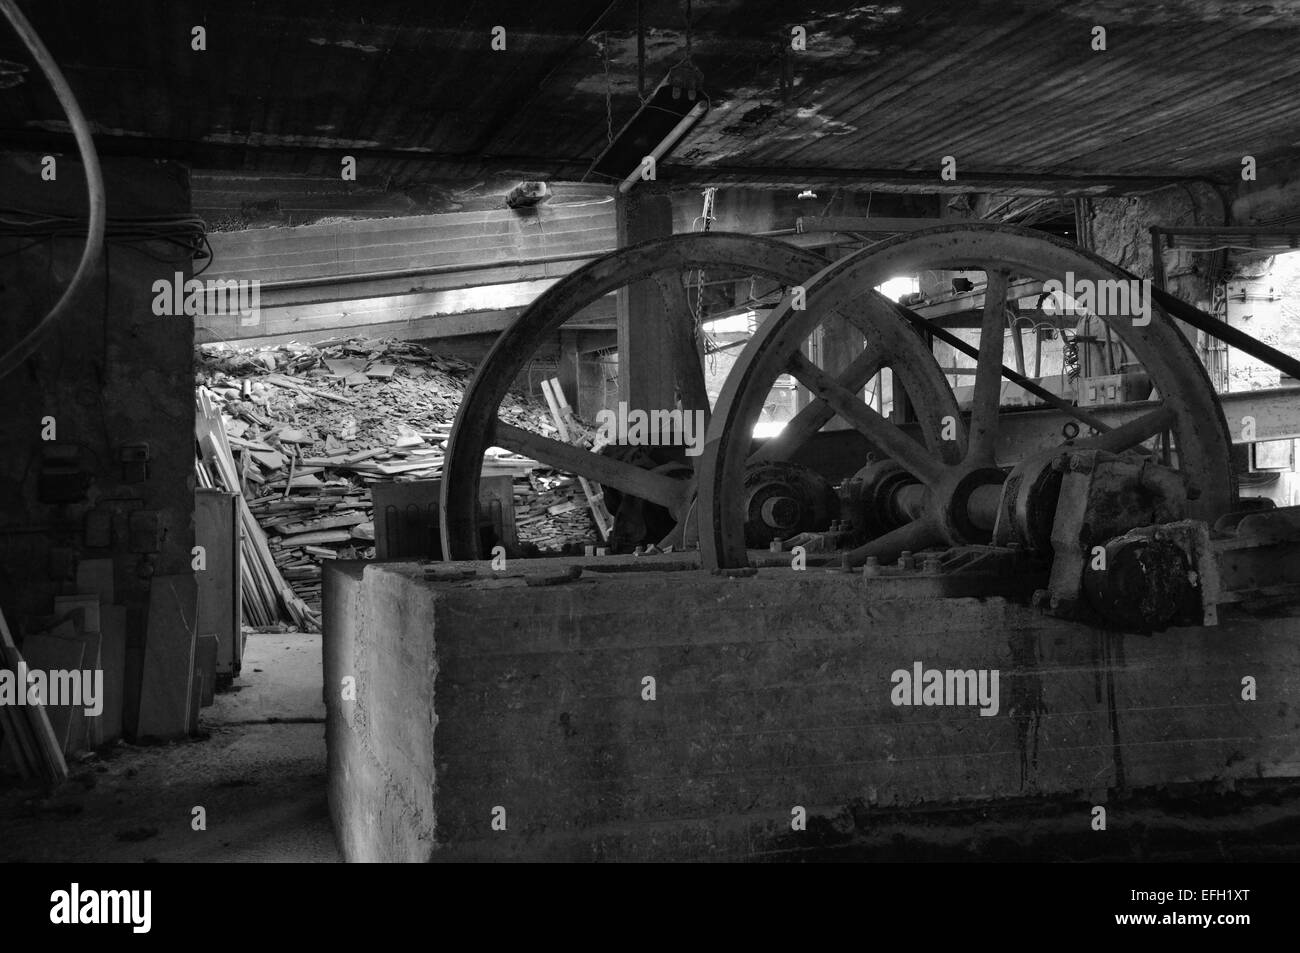 Rusty macchinari in fabbrica abbandonata interni. In bianco e nero. Foto Stock